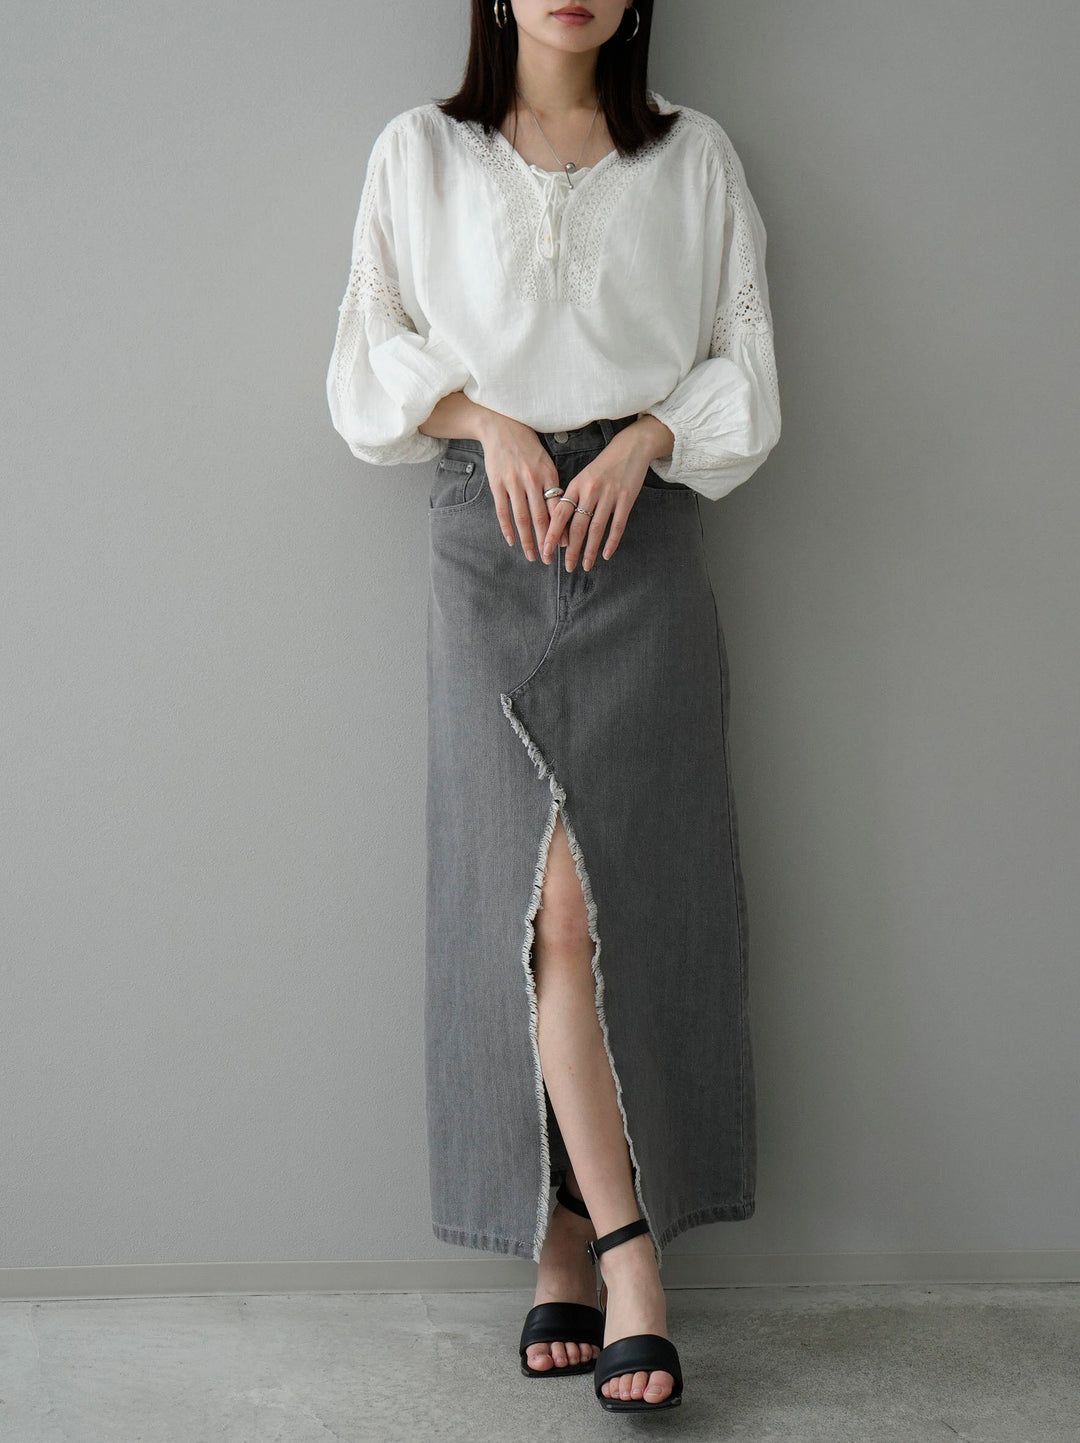 [SET] Cotton lace blouse + front slit denim long skirt (2set)